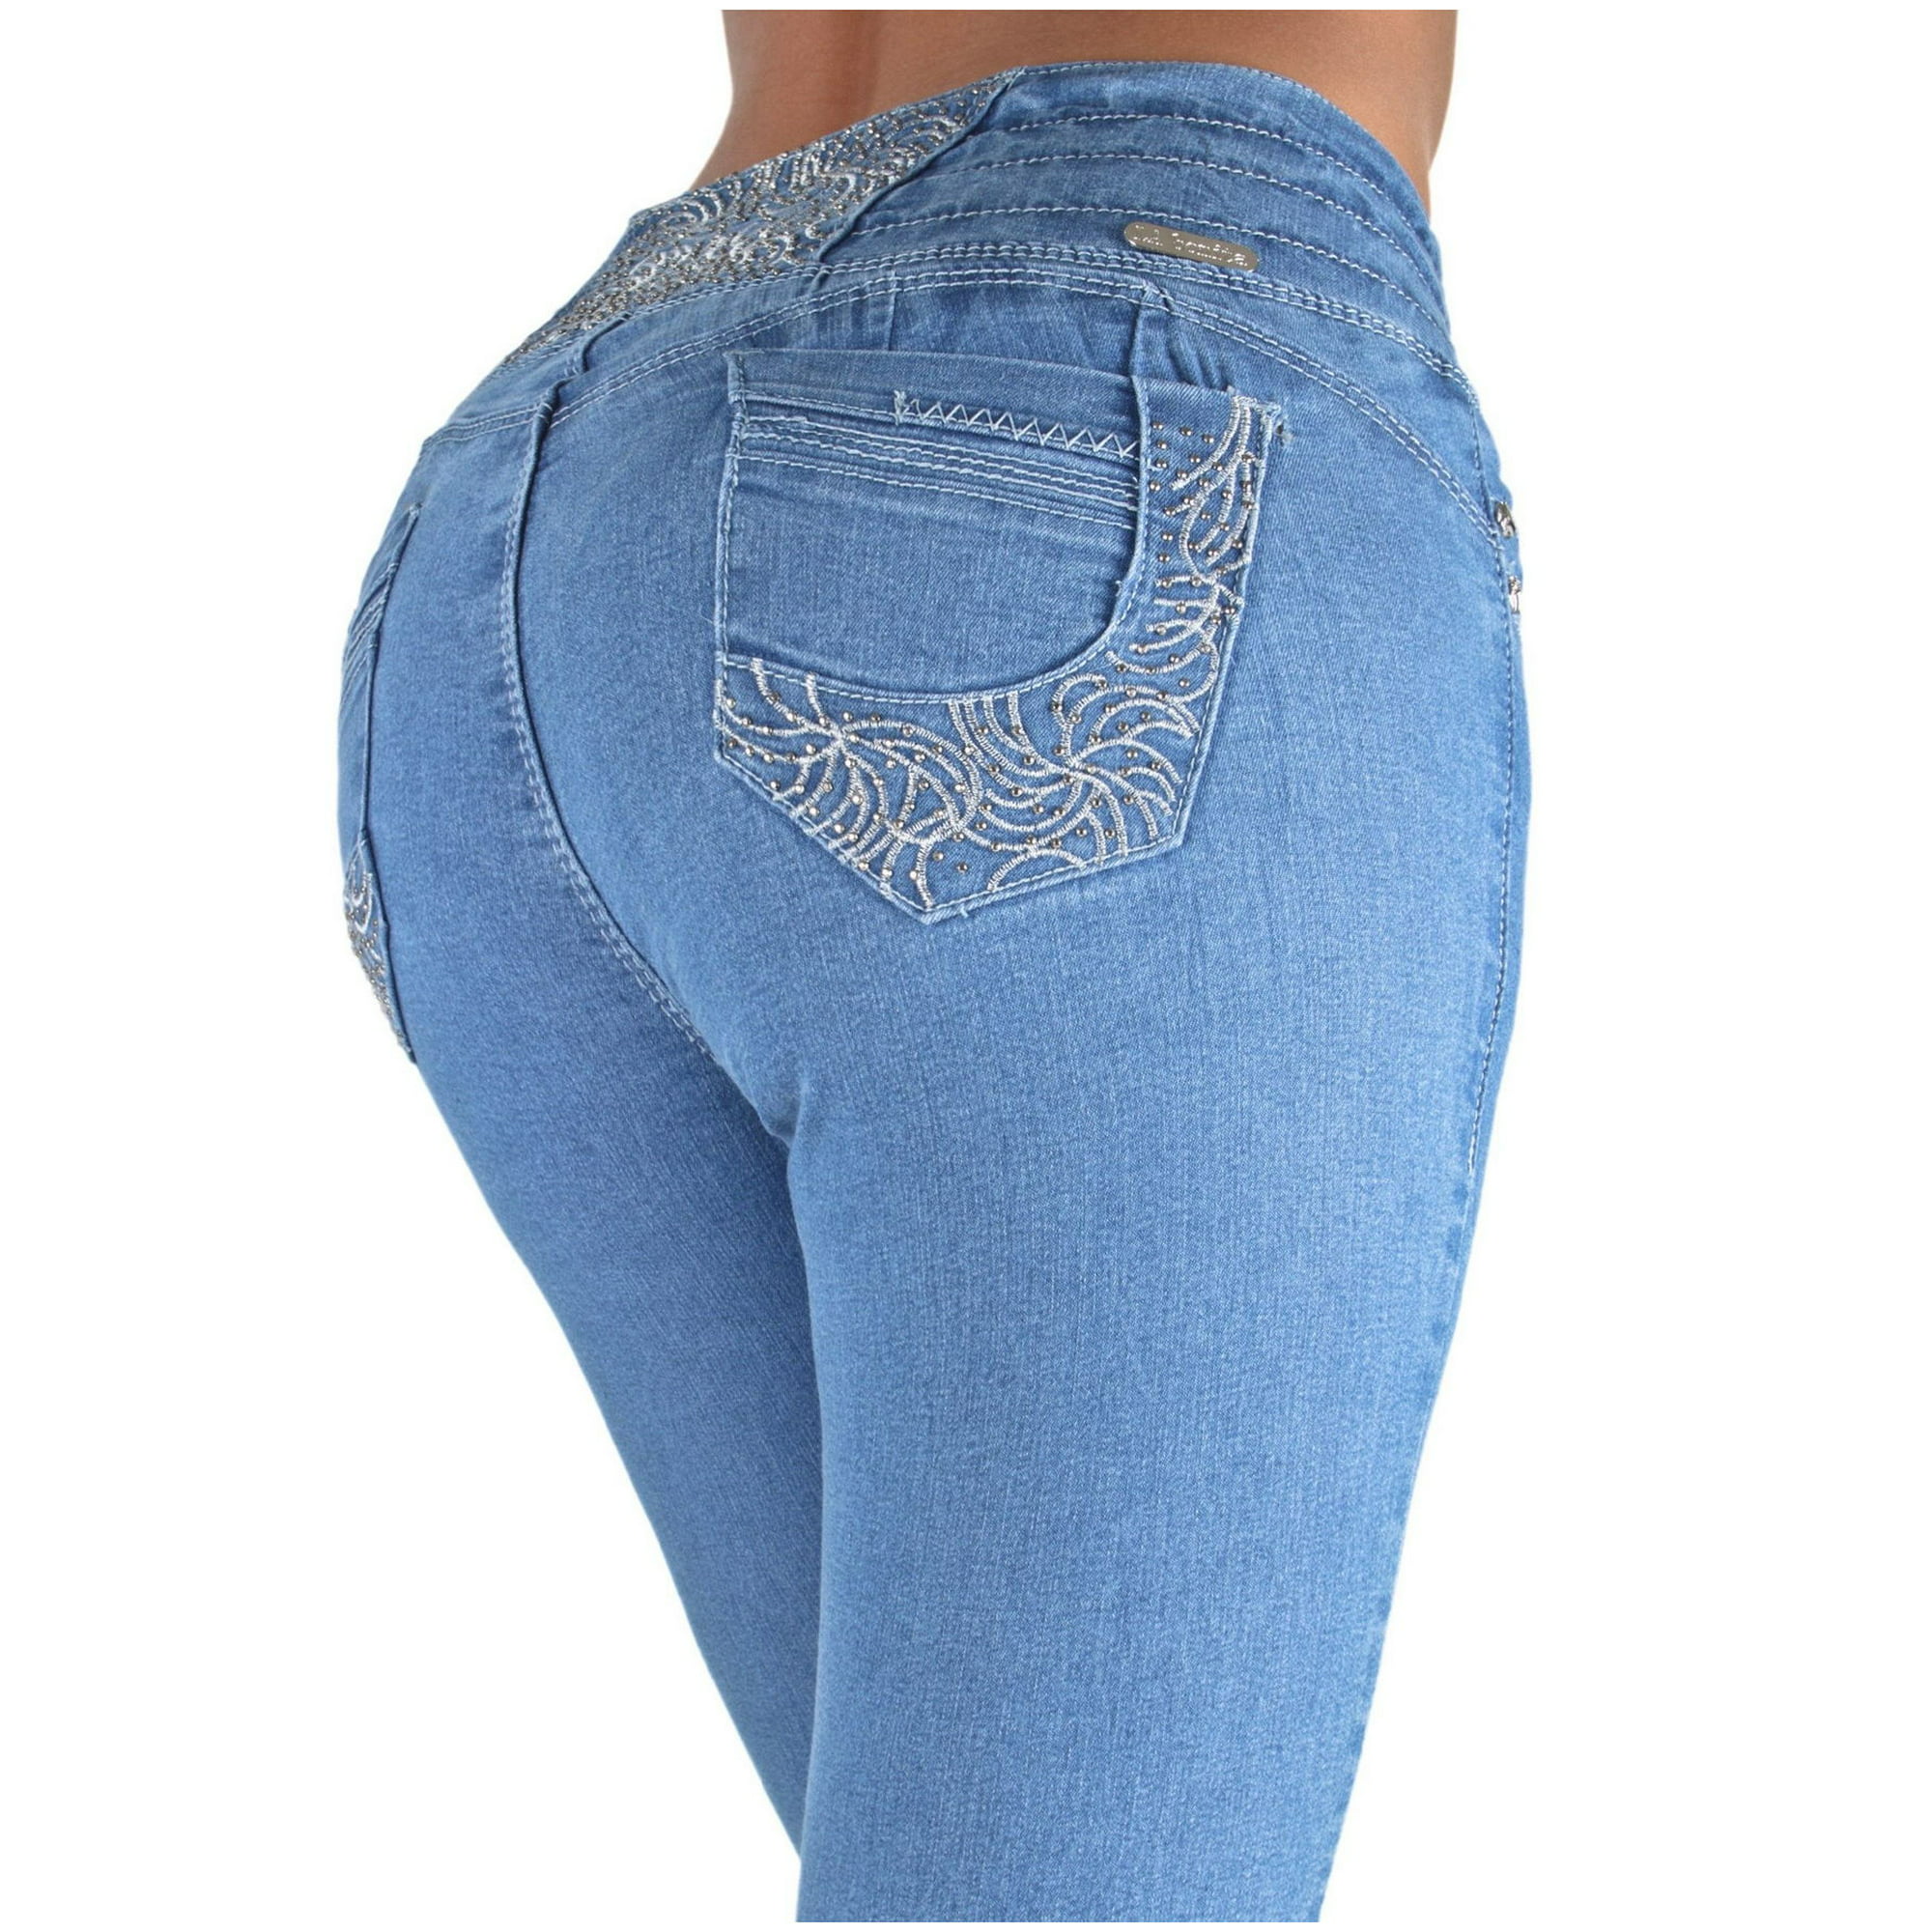 Ulv i fåretøj mm Bliv klar Fashion2Love Plus Size Butt Lift Elastic Waist Skinny Jeans - Walmart.com